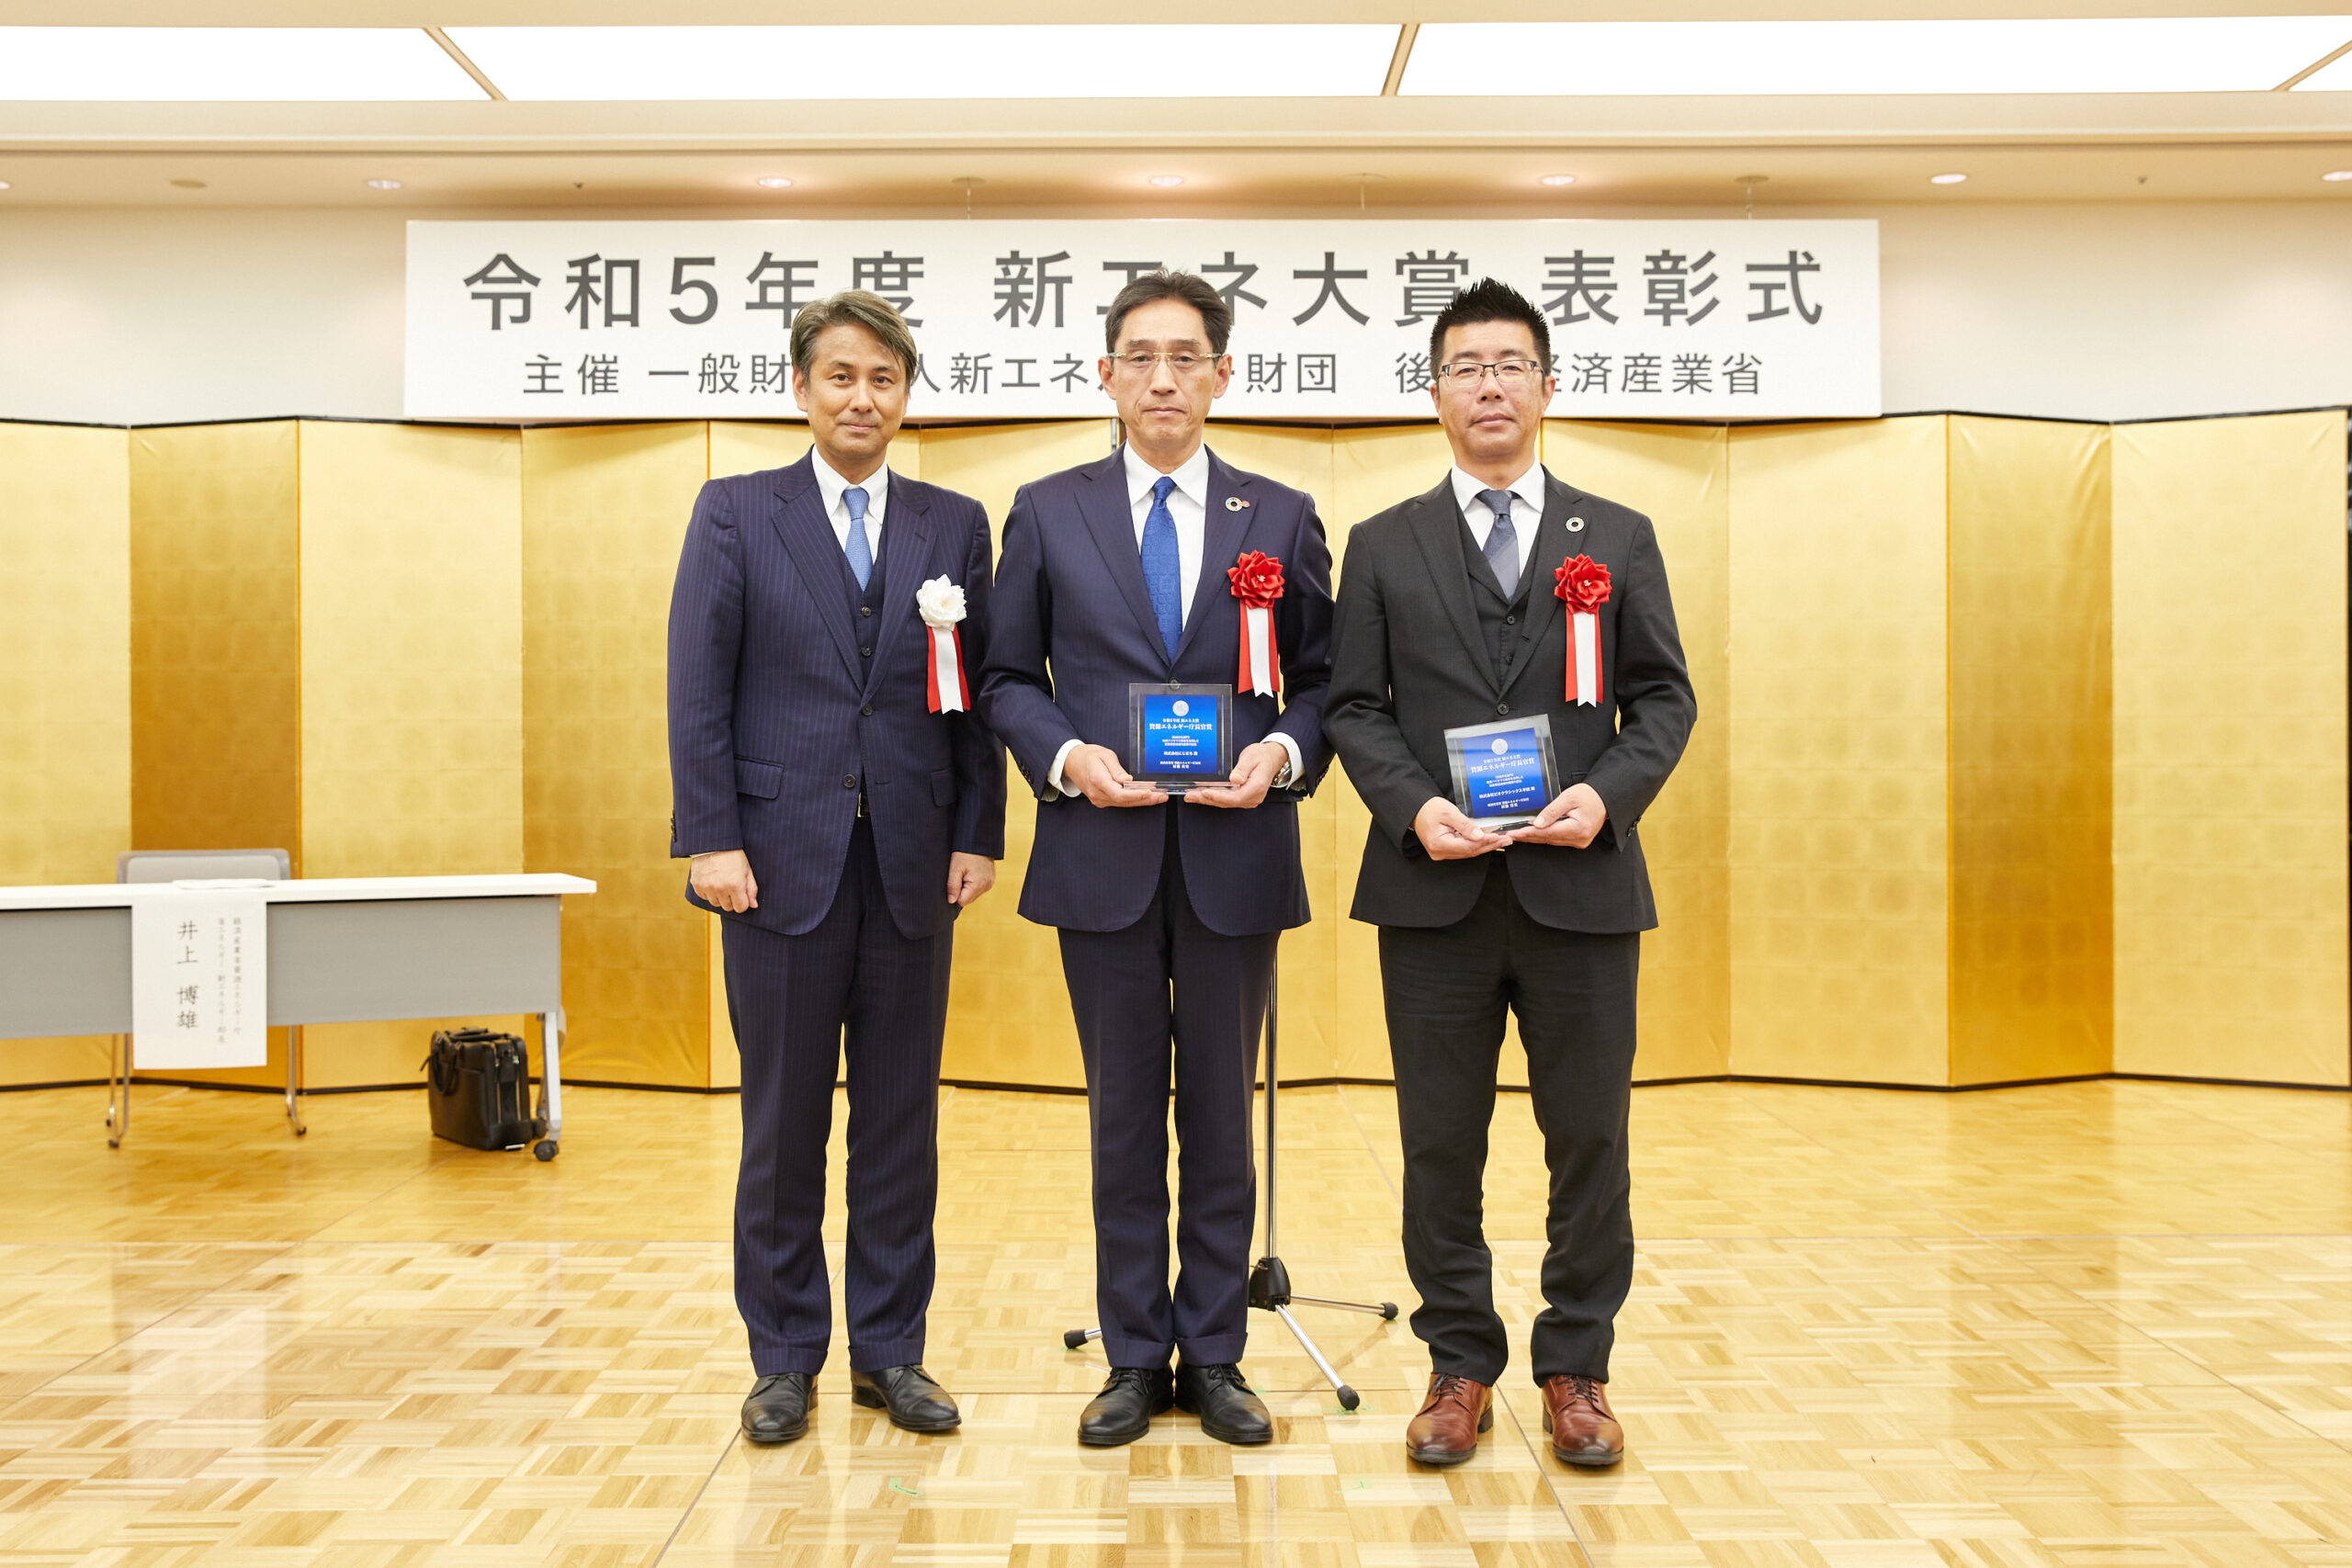 弊社グループ企業が、令和5年度「新エネ大賞」で資源エネルギー長官賞を受賞しました！